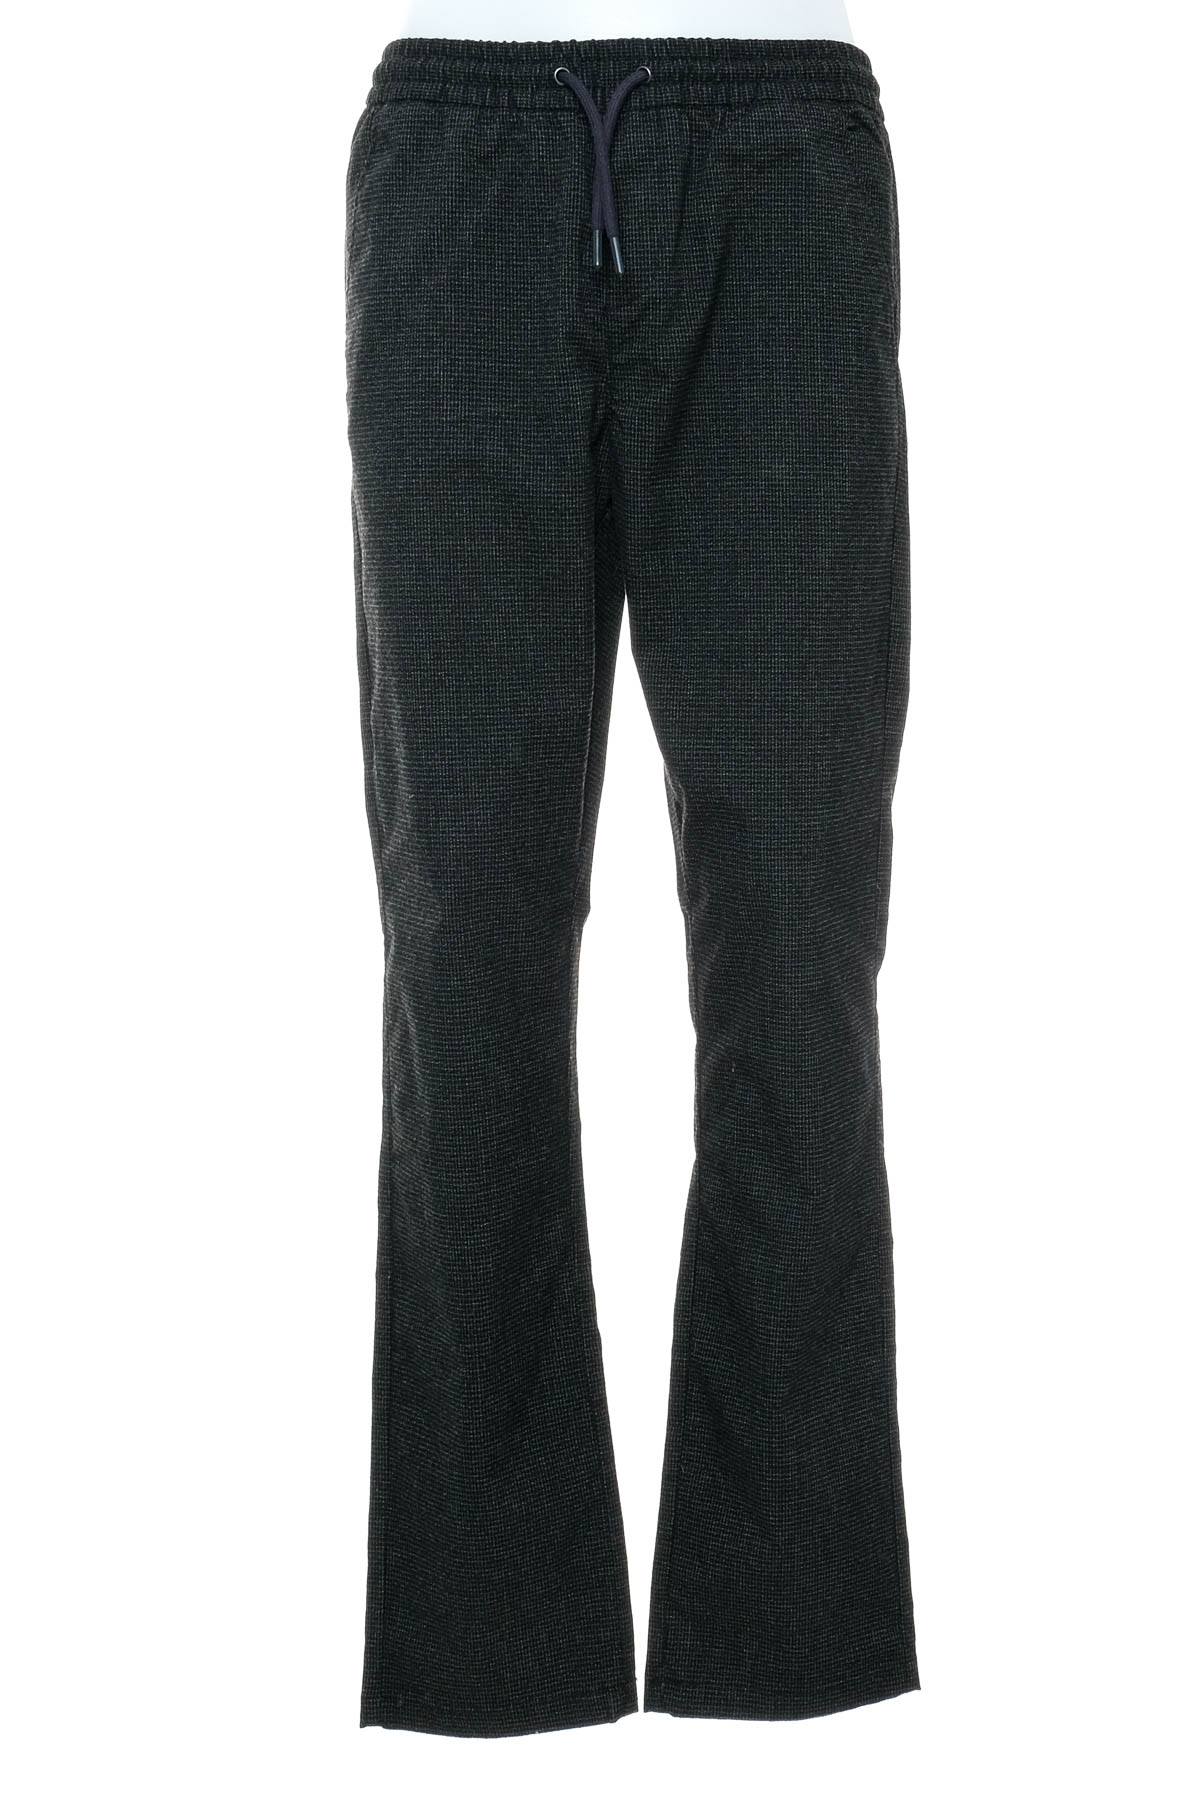 Spodnie dla chłopca - TOM TAILOR - 0